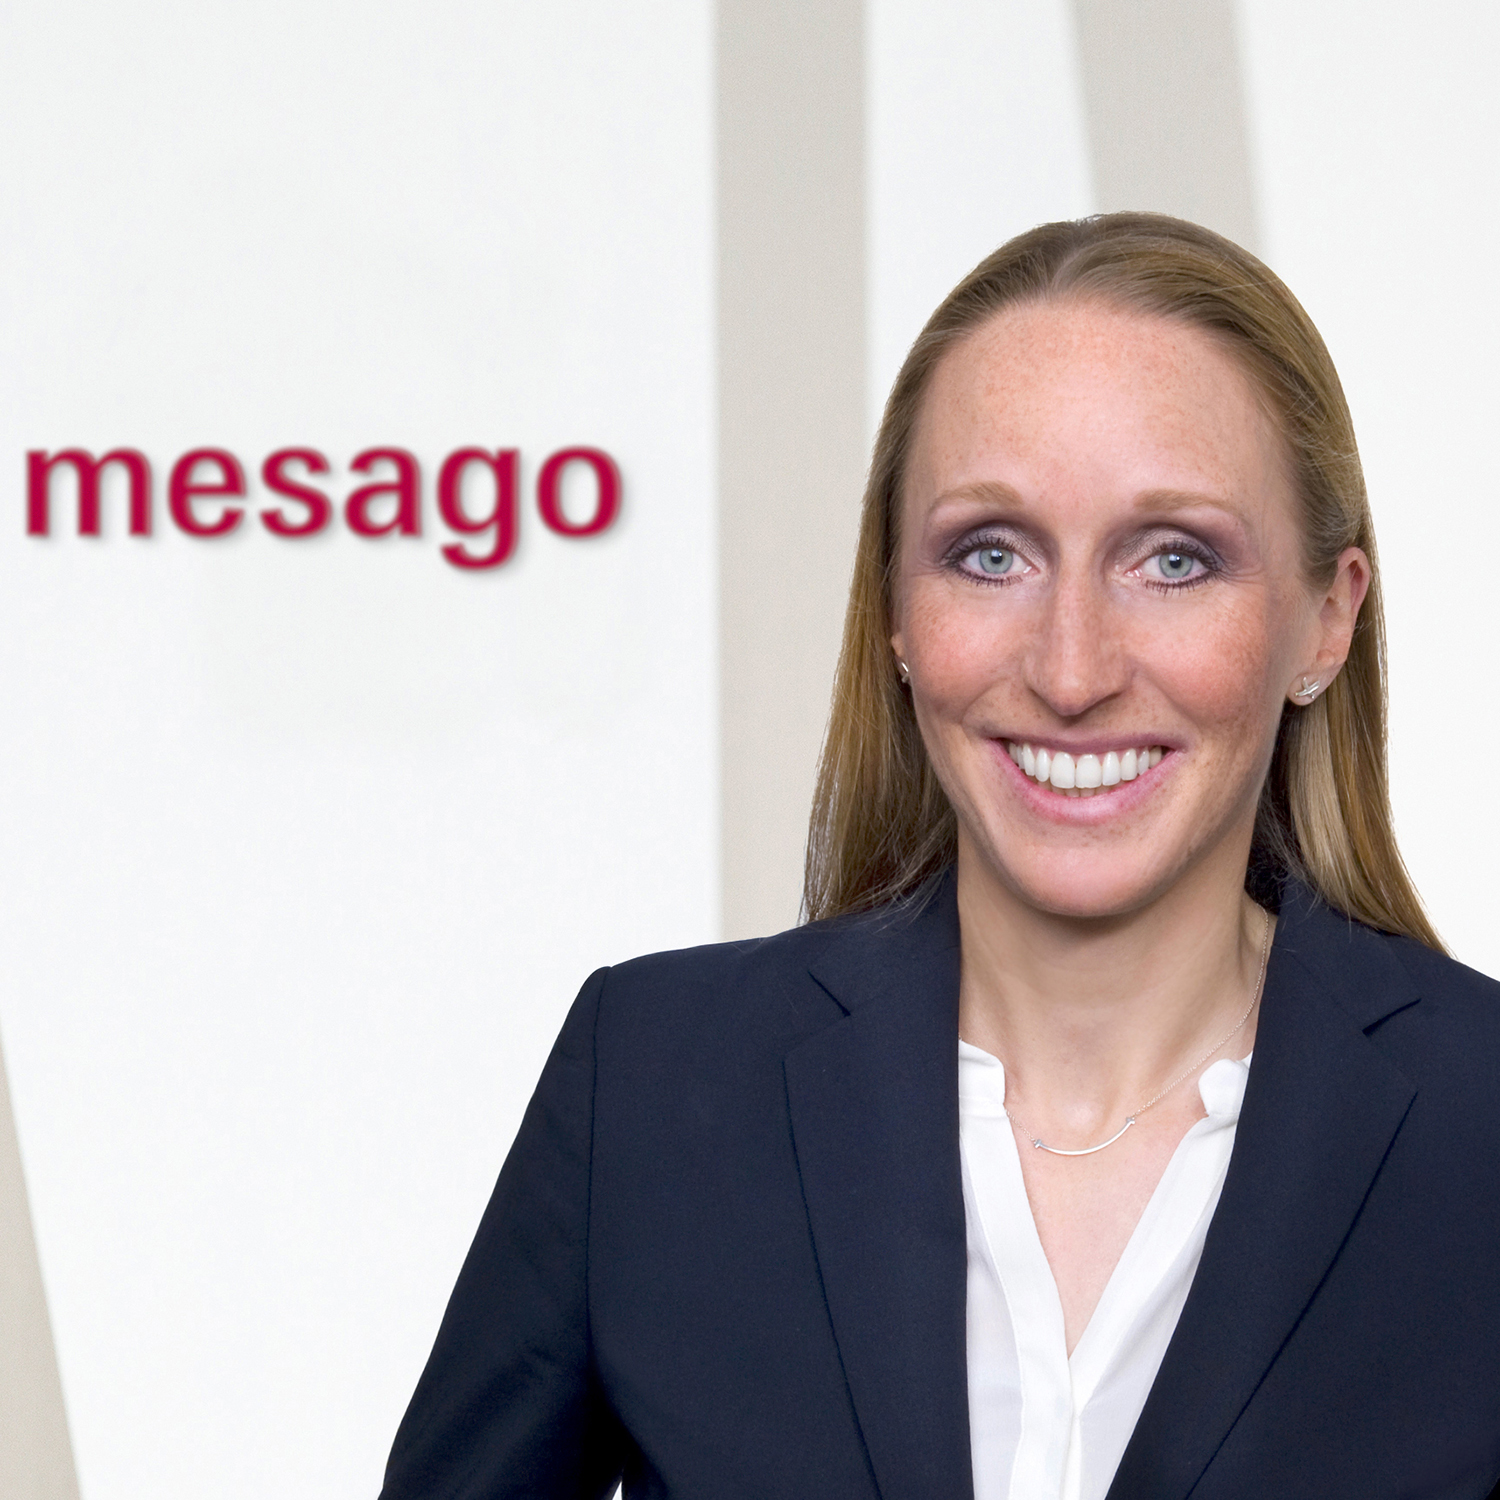 Simone Pfisterer, Mesago Messe Frankfurt GmbH, Bereichsleiterin für Servparc